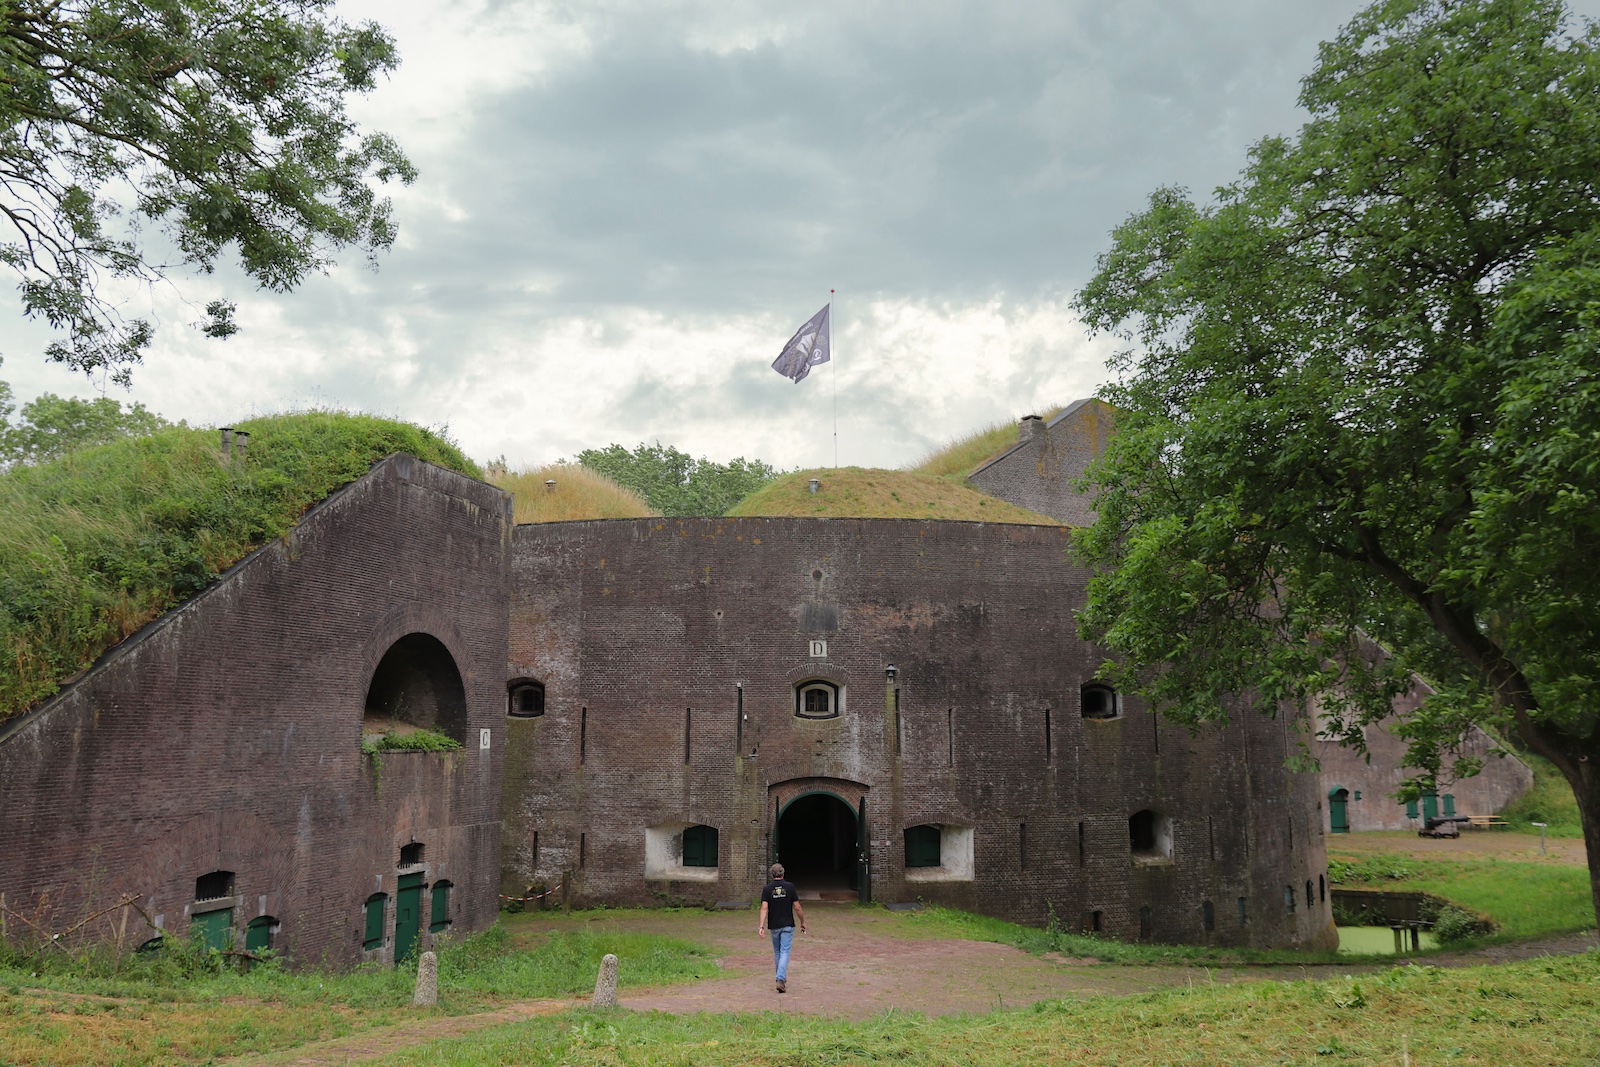 Fort Everdingen, de thuisbasis van Brouwerij Duits & Lauret